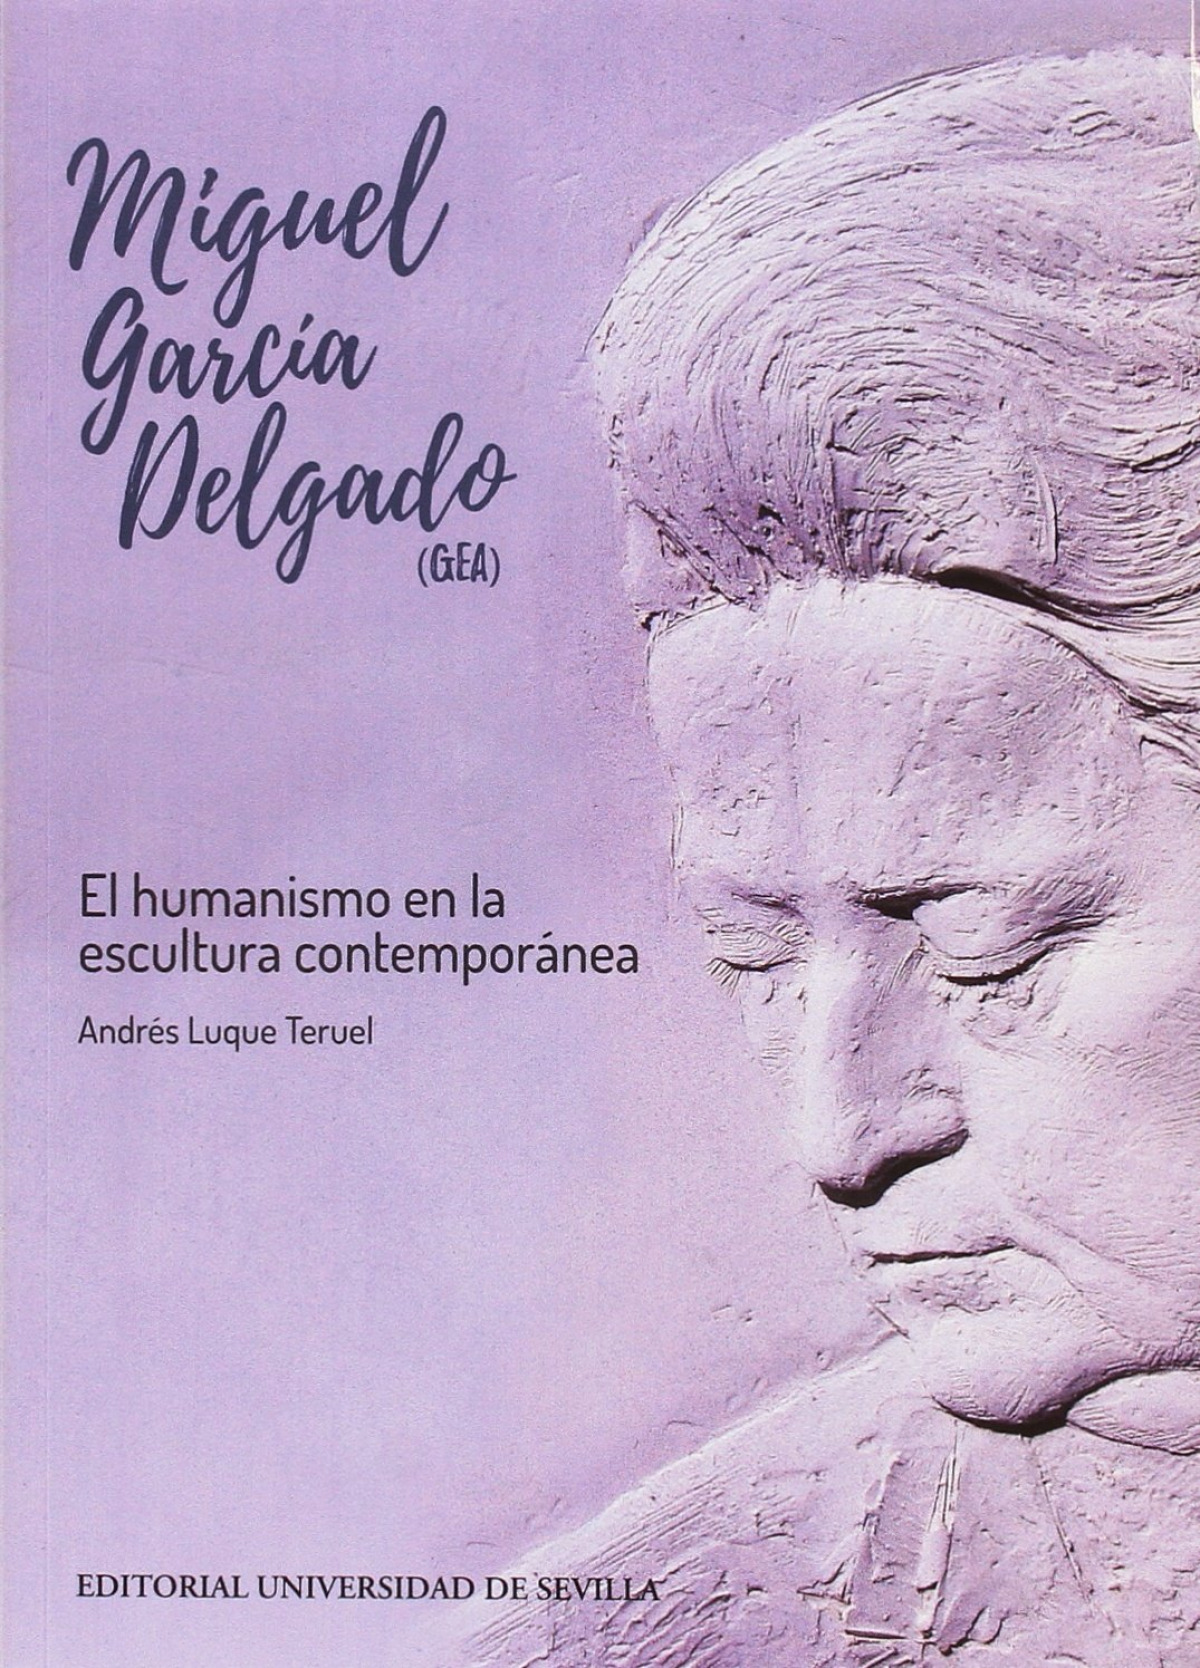 Miguel garcía delgado (gea) - AndrÉs Luque Teruel